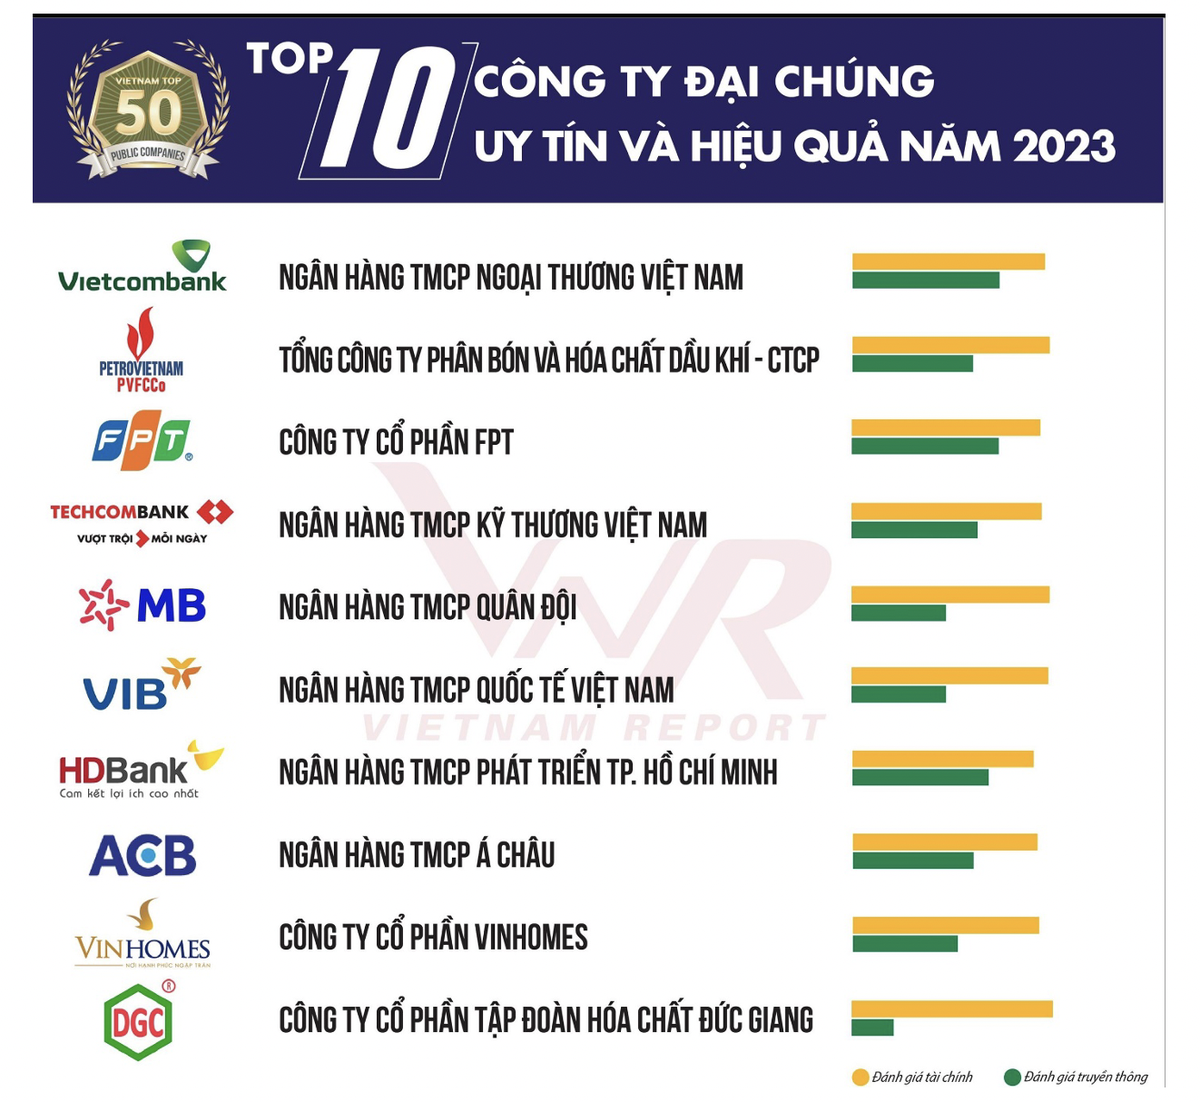 6 ngân hàng lọt Top 10 công ty đại chúng uy tín và hiệu quả năm 2023